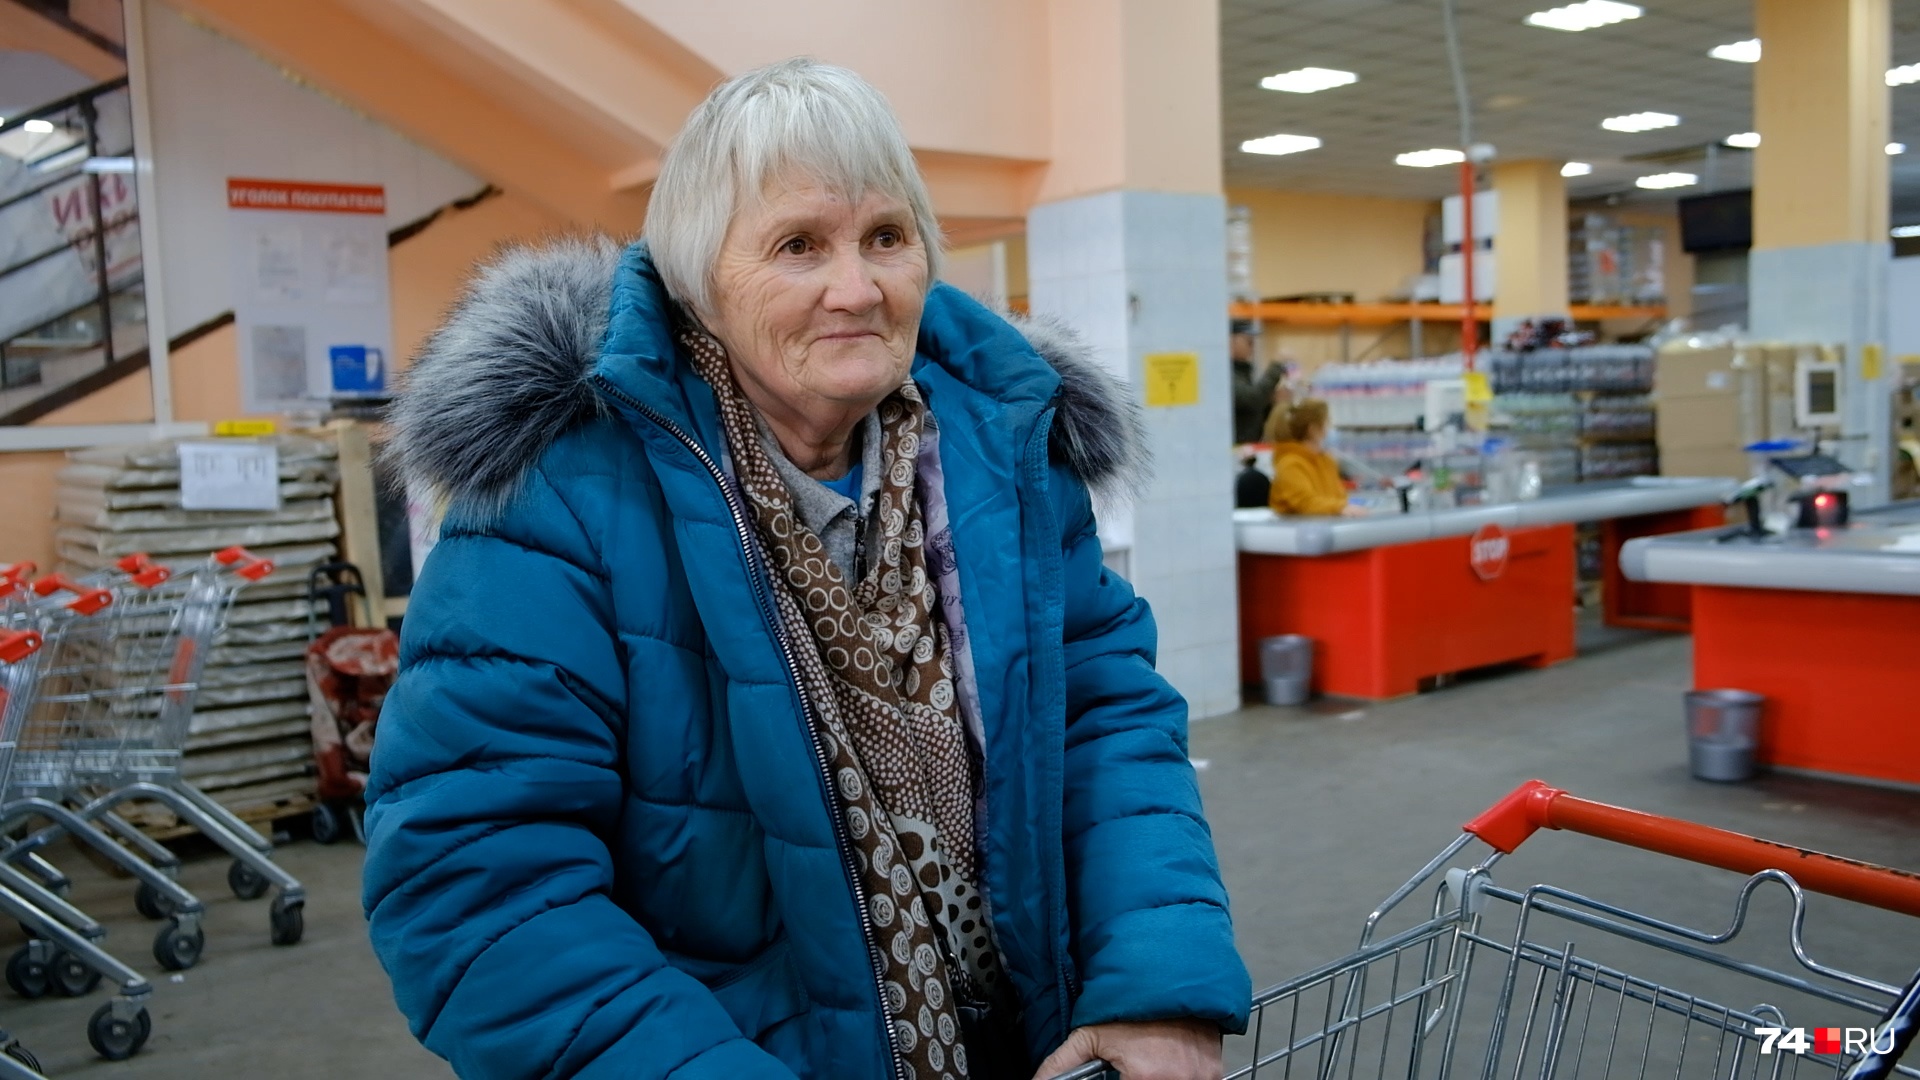 Основные покупатели — пожилые люди: пенсии едва хватает даже на основные продукты